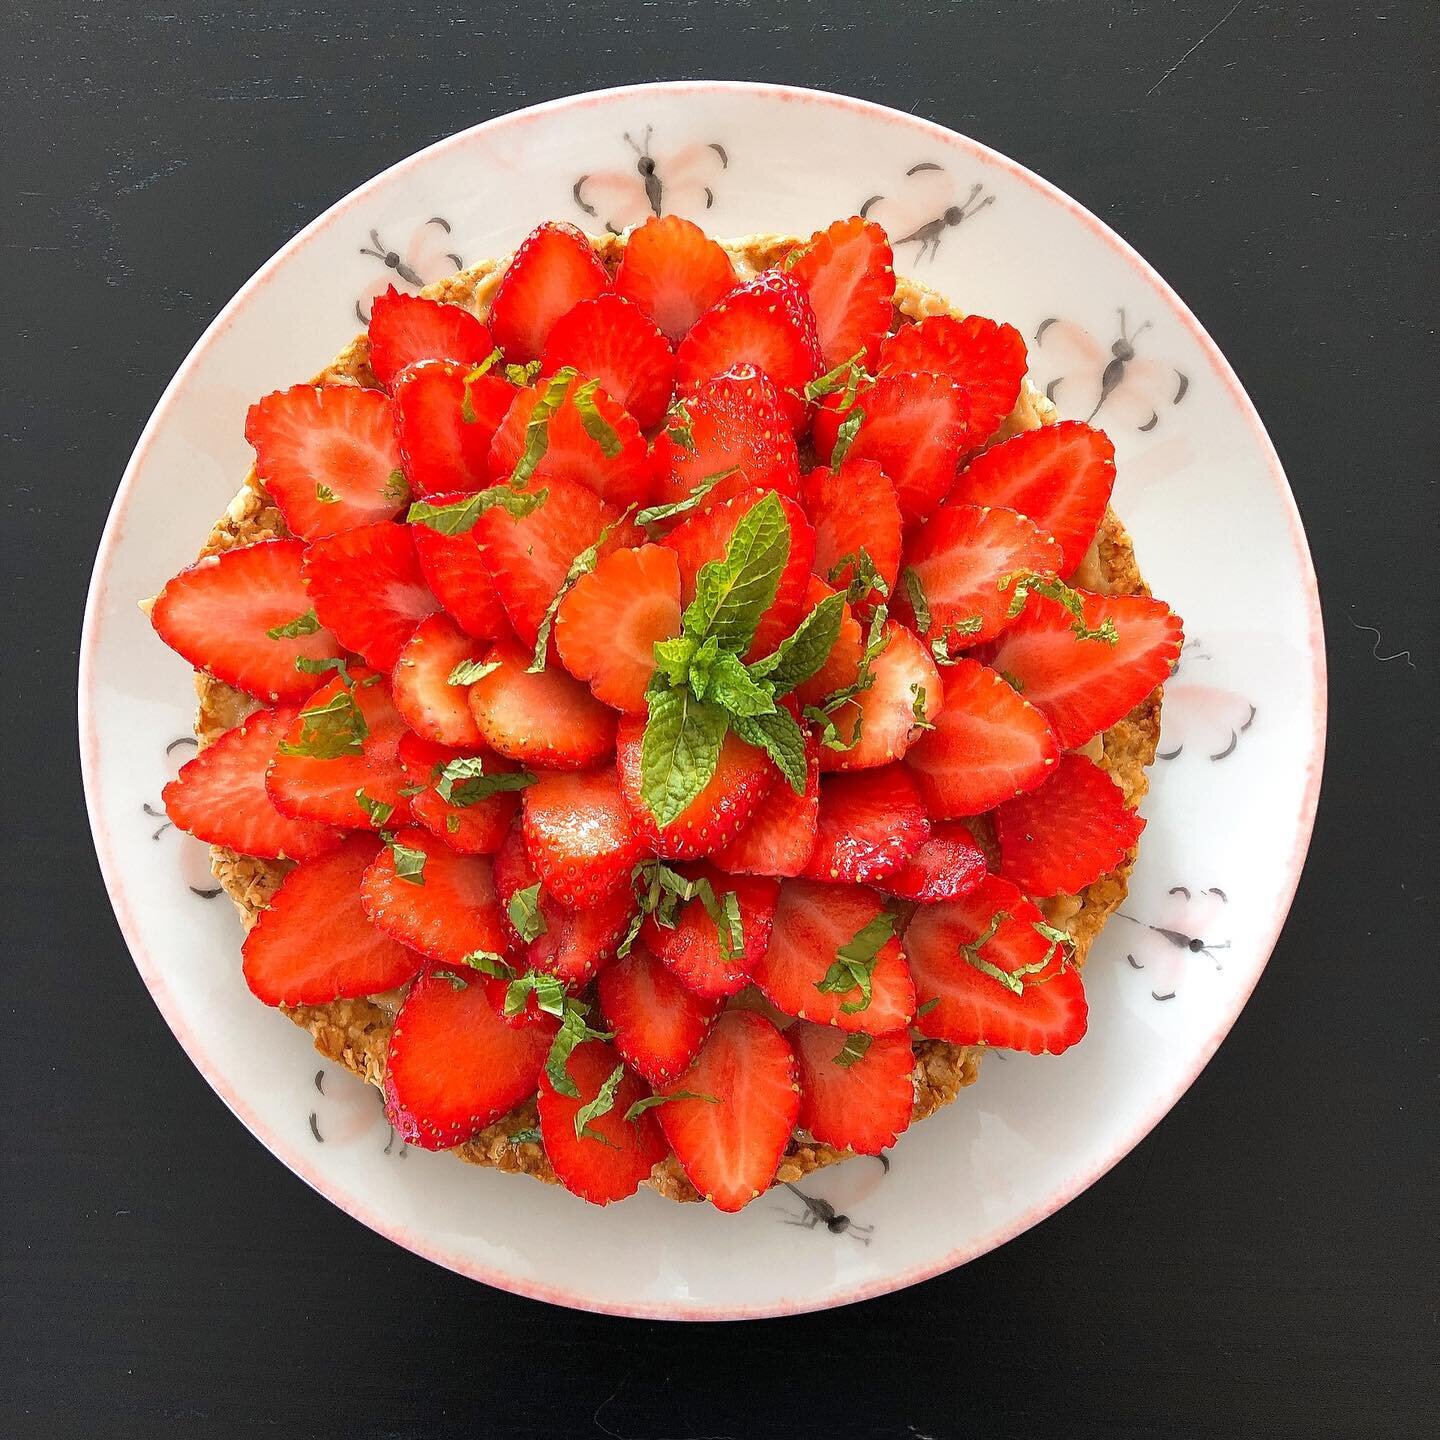 Aujourd&rsquo;hui c&rsquo;est tarte aux fraises de @healthfit_challenge !!! En plus d&rsquo;&ecirc;tre beau et bon c&rsquo;est super sain !!! #healthyfood #healthylifestyle #healthyrecipes #fraise #tarteavoine #ptitgo&ucirc;ter #jevendraismonamepourd